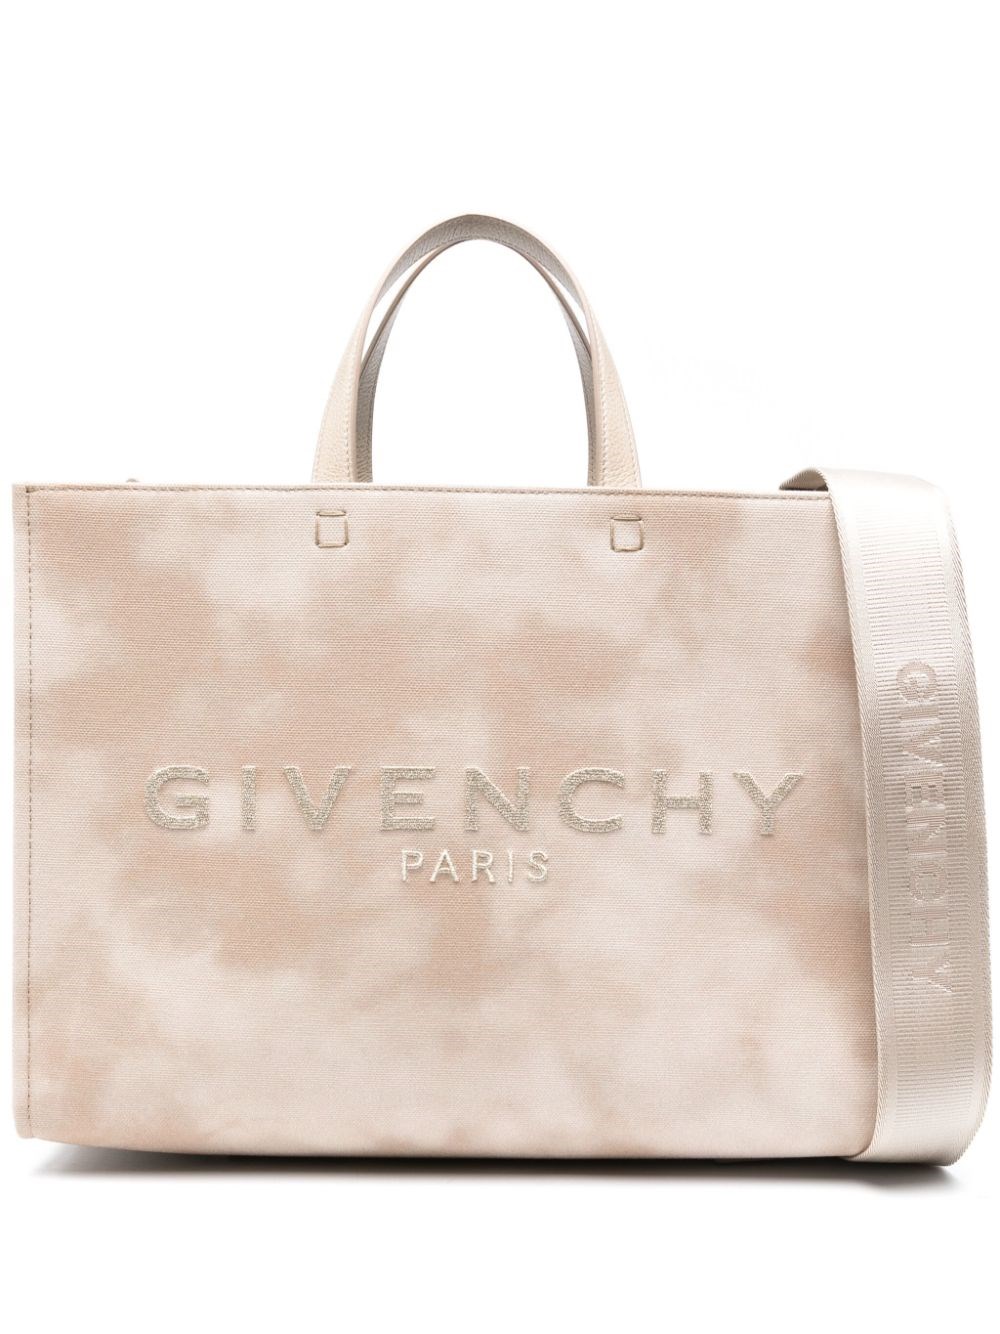 Givenchy Novità G-tote Media In Tela Tie And Dye In Gold